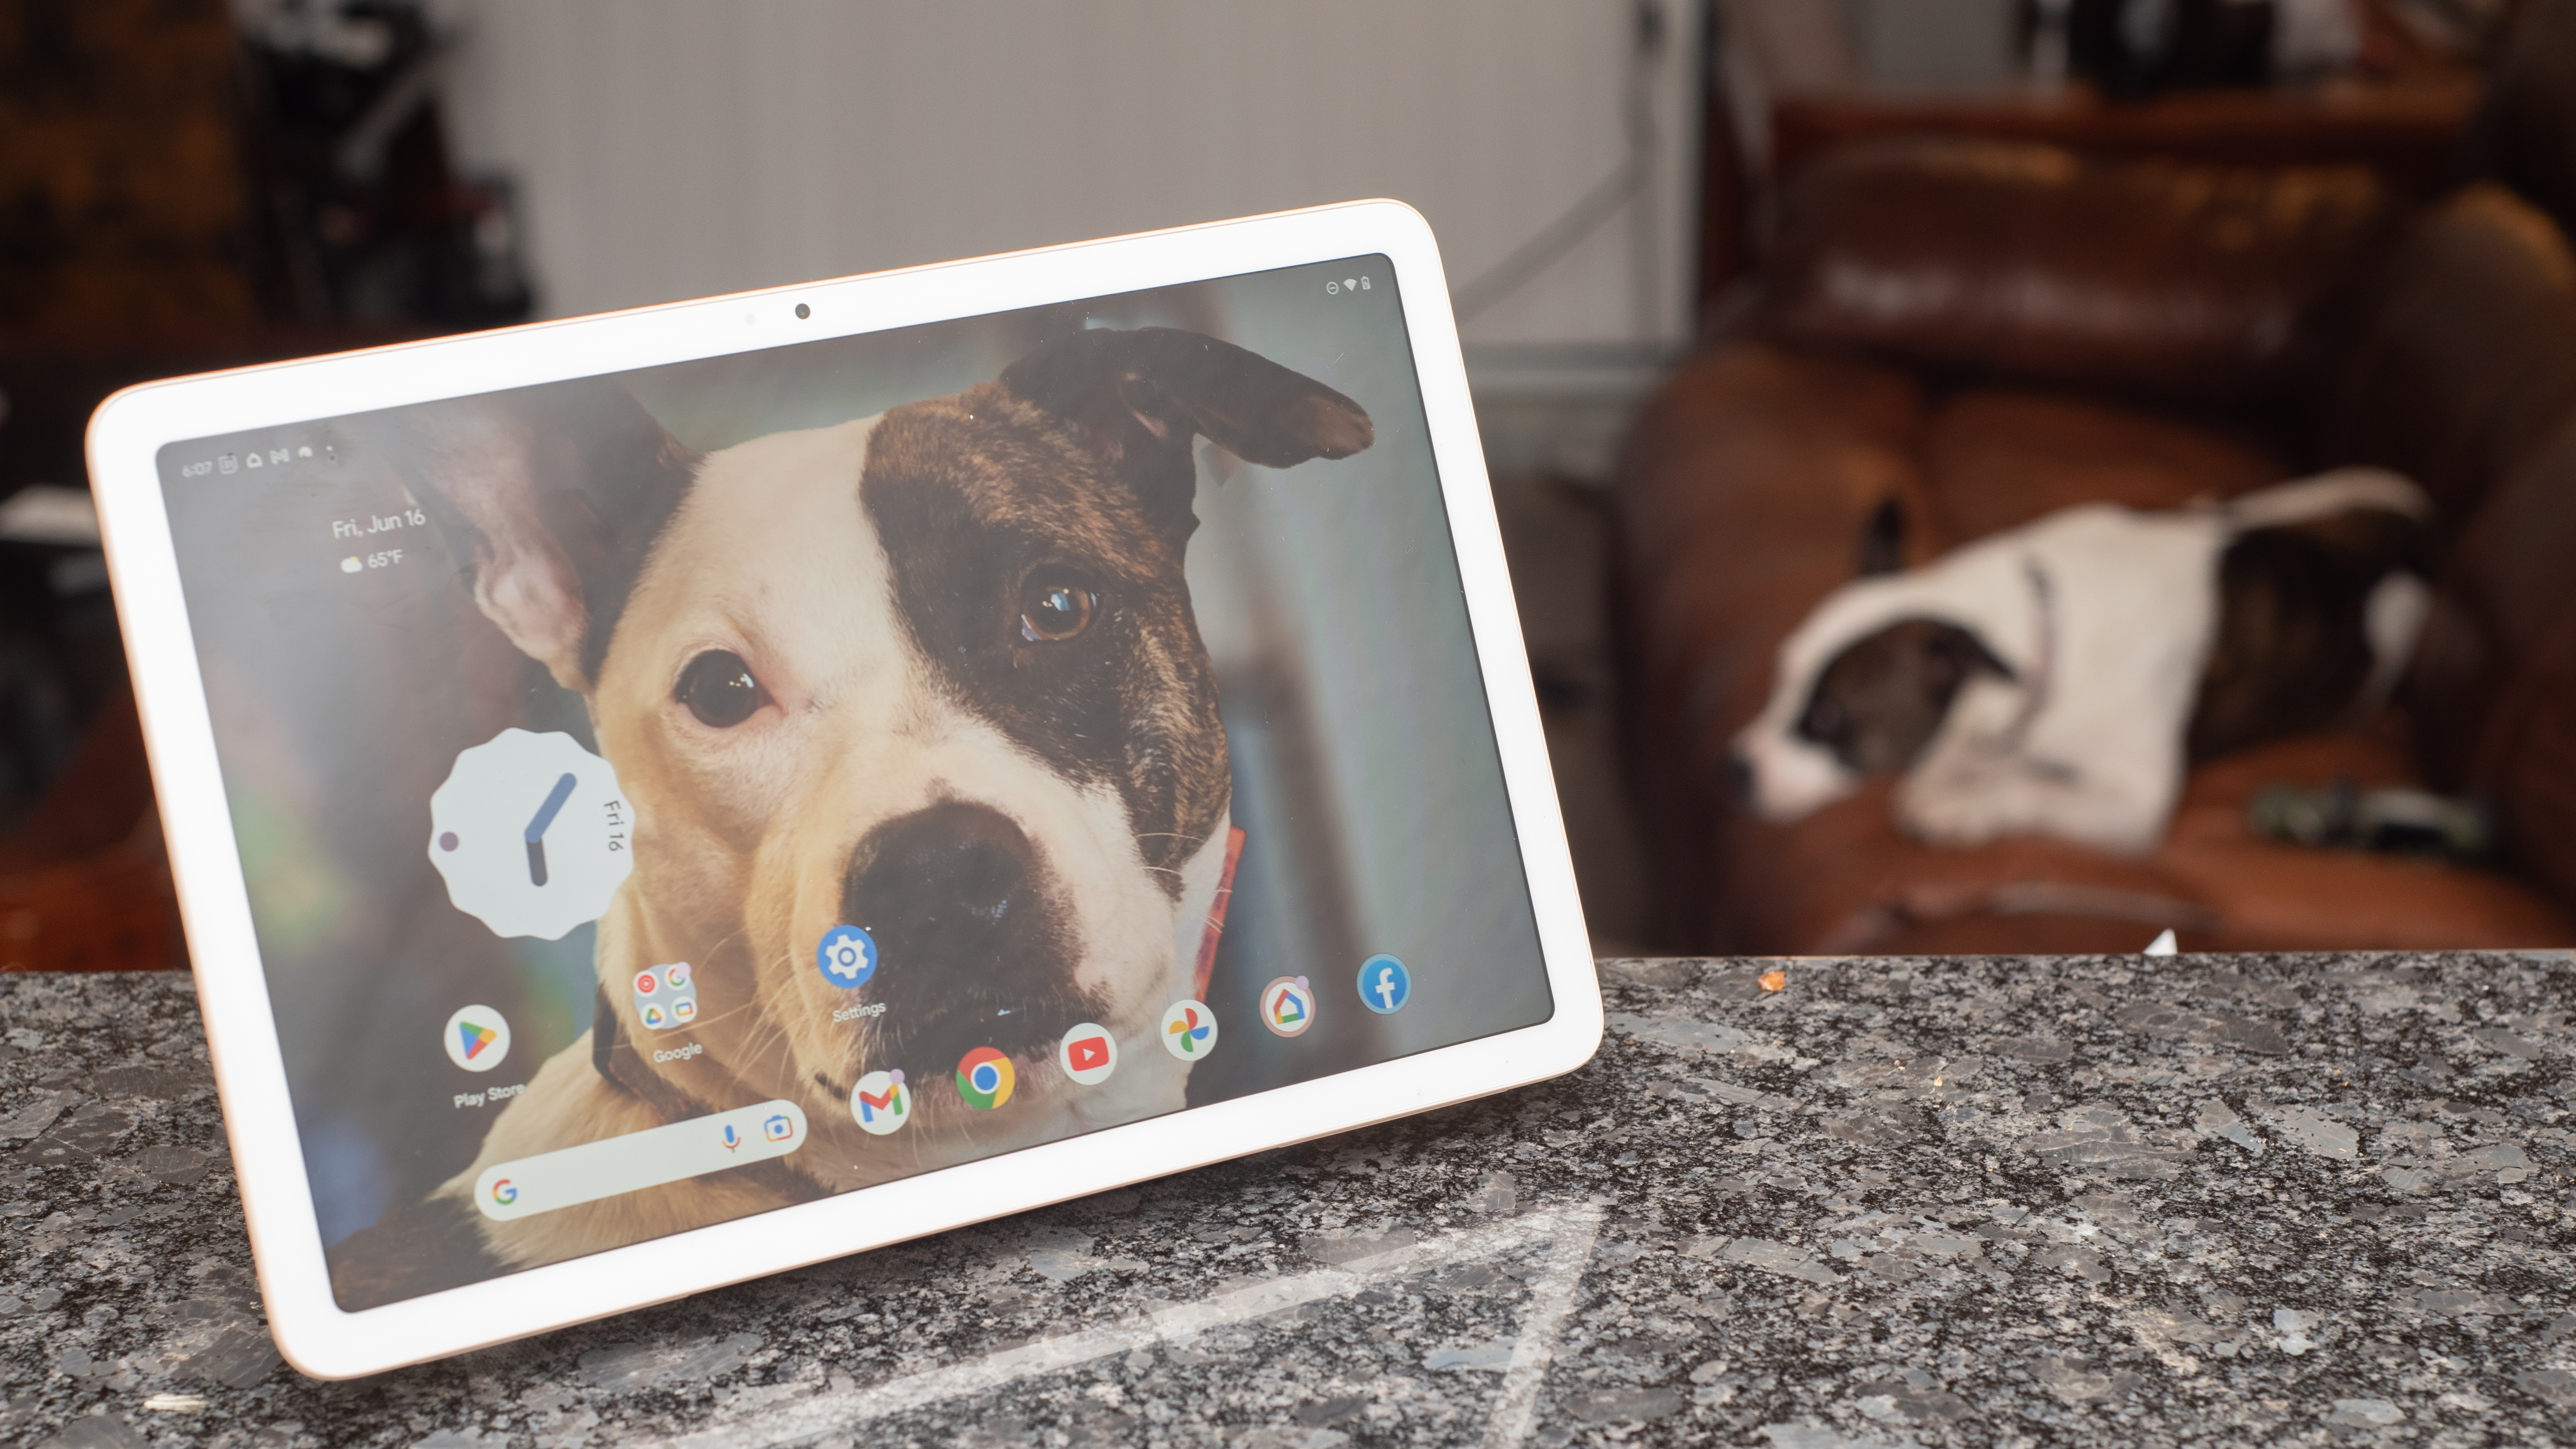 Google Pixel Tablet oppstilt på en benk med steinplate